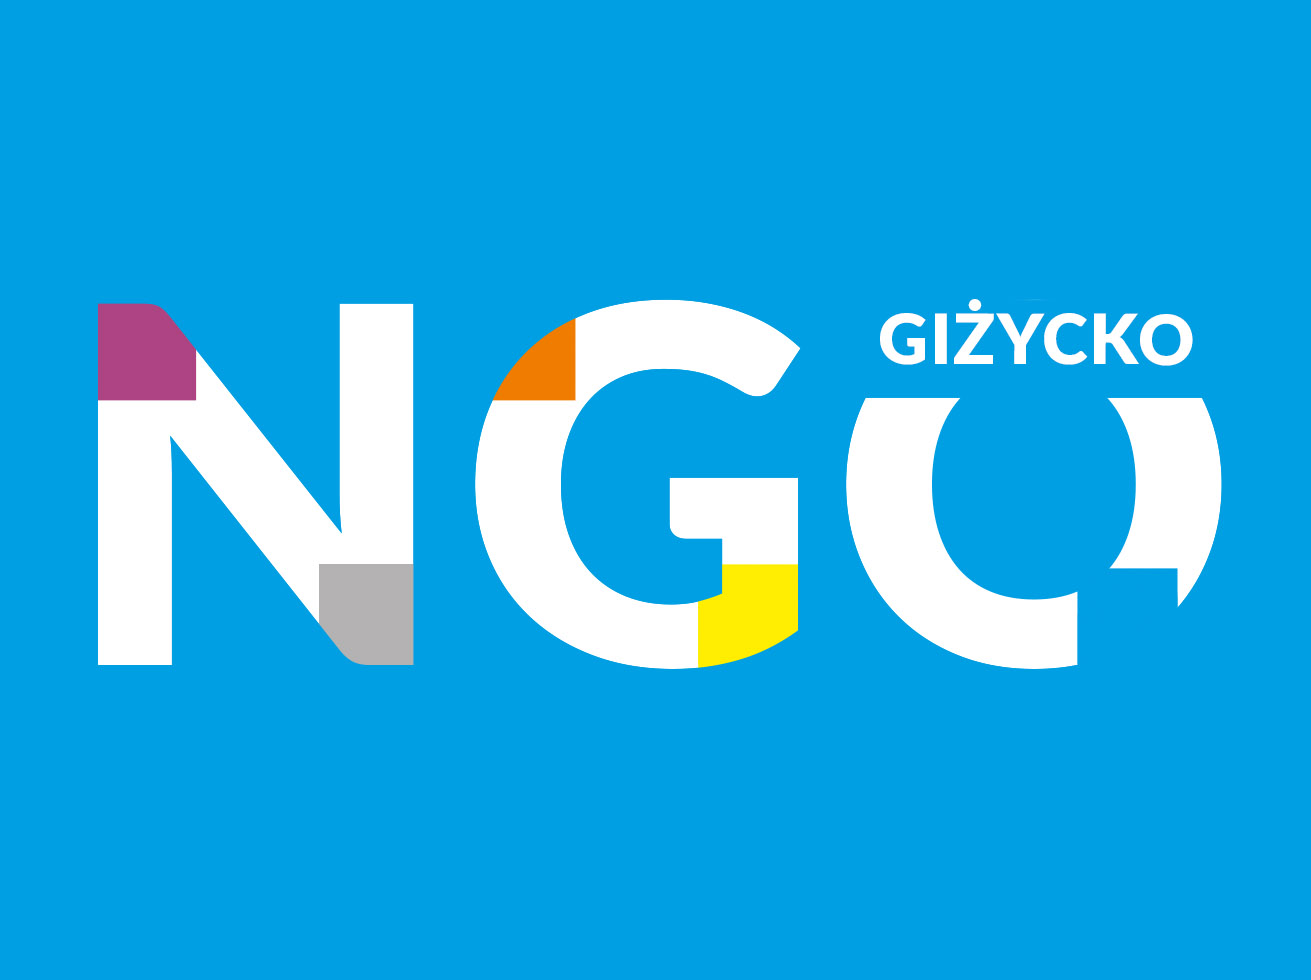 Logo NGO